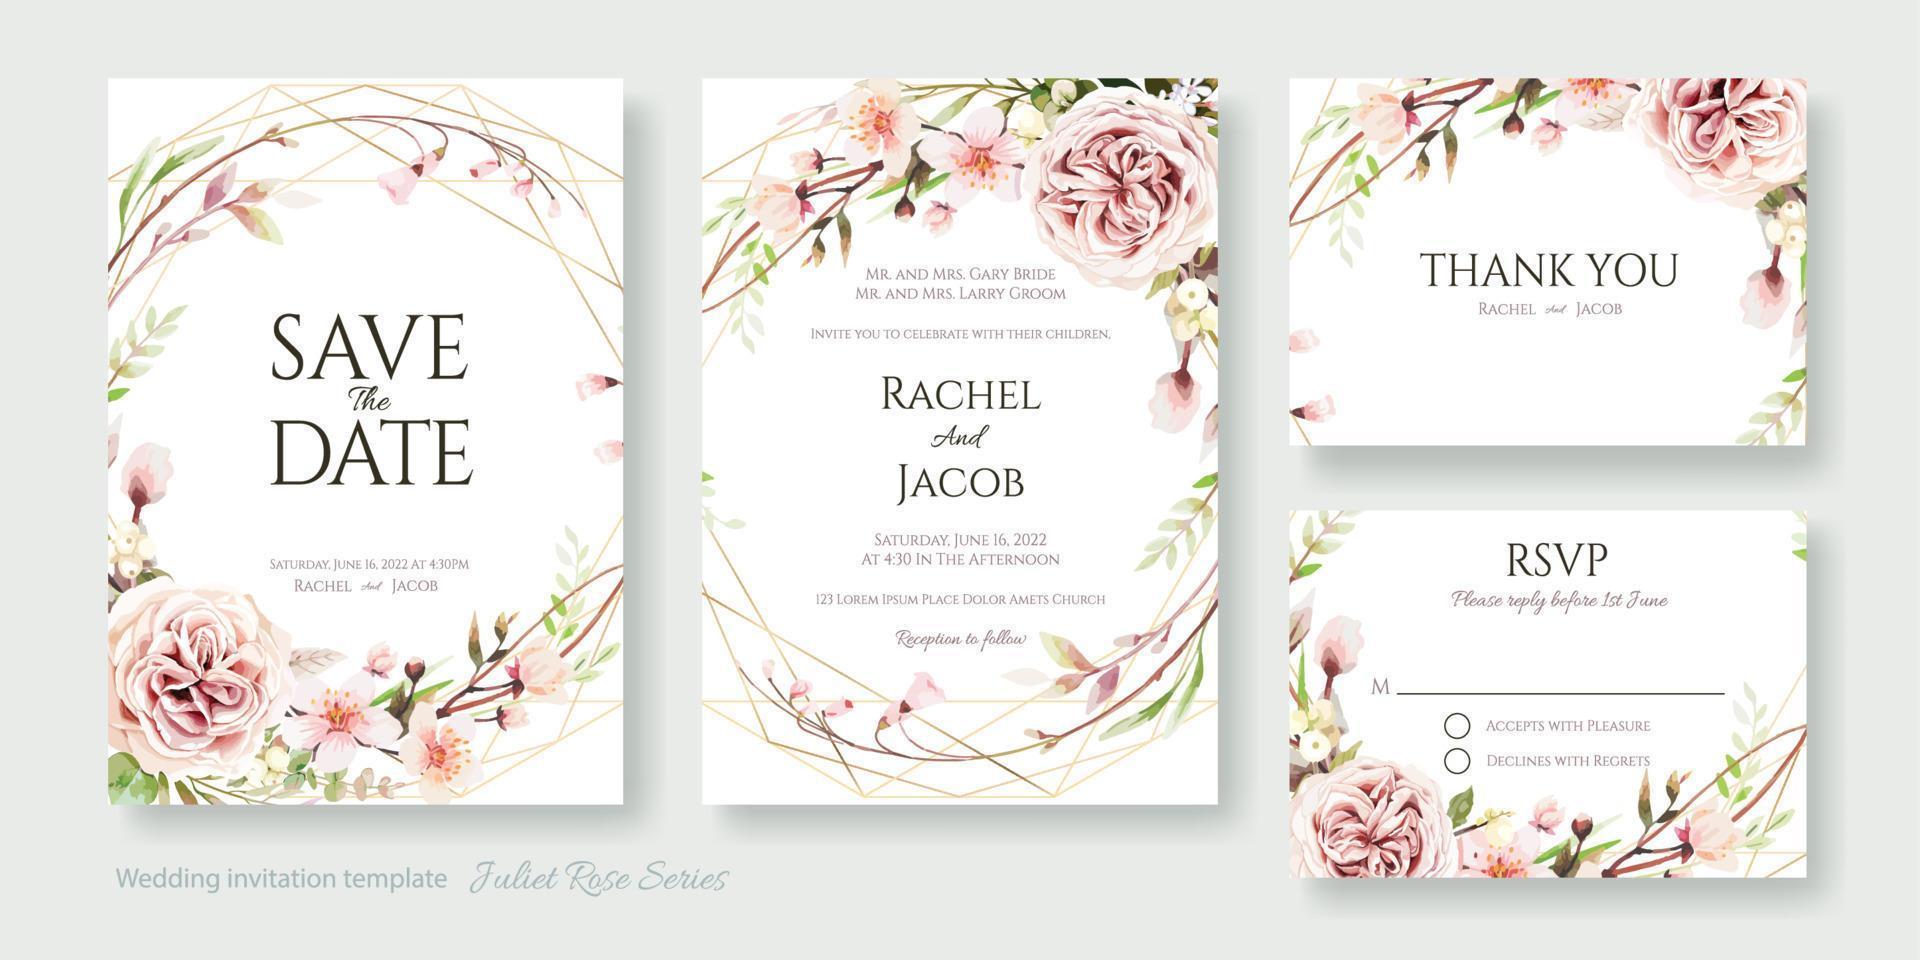 invitation de mariage, réservez la date, merci, modèle de conception de carte rsvp. vecteur. fleurs de rose juliette et de fleurs de cerisier. vecteur